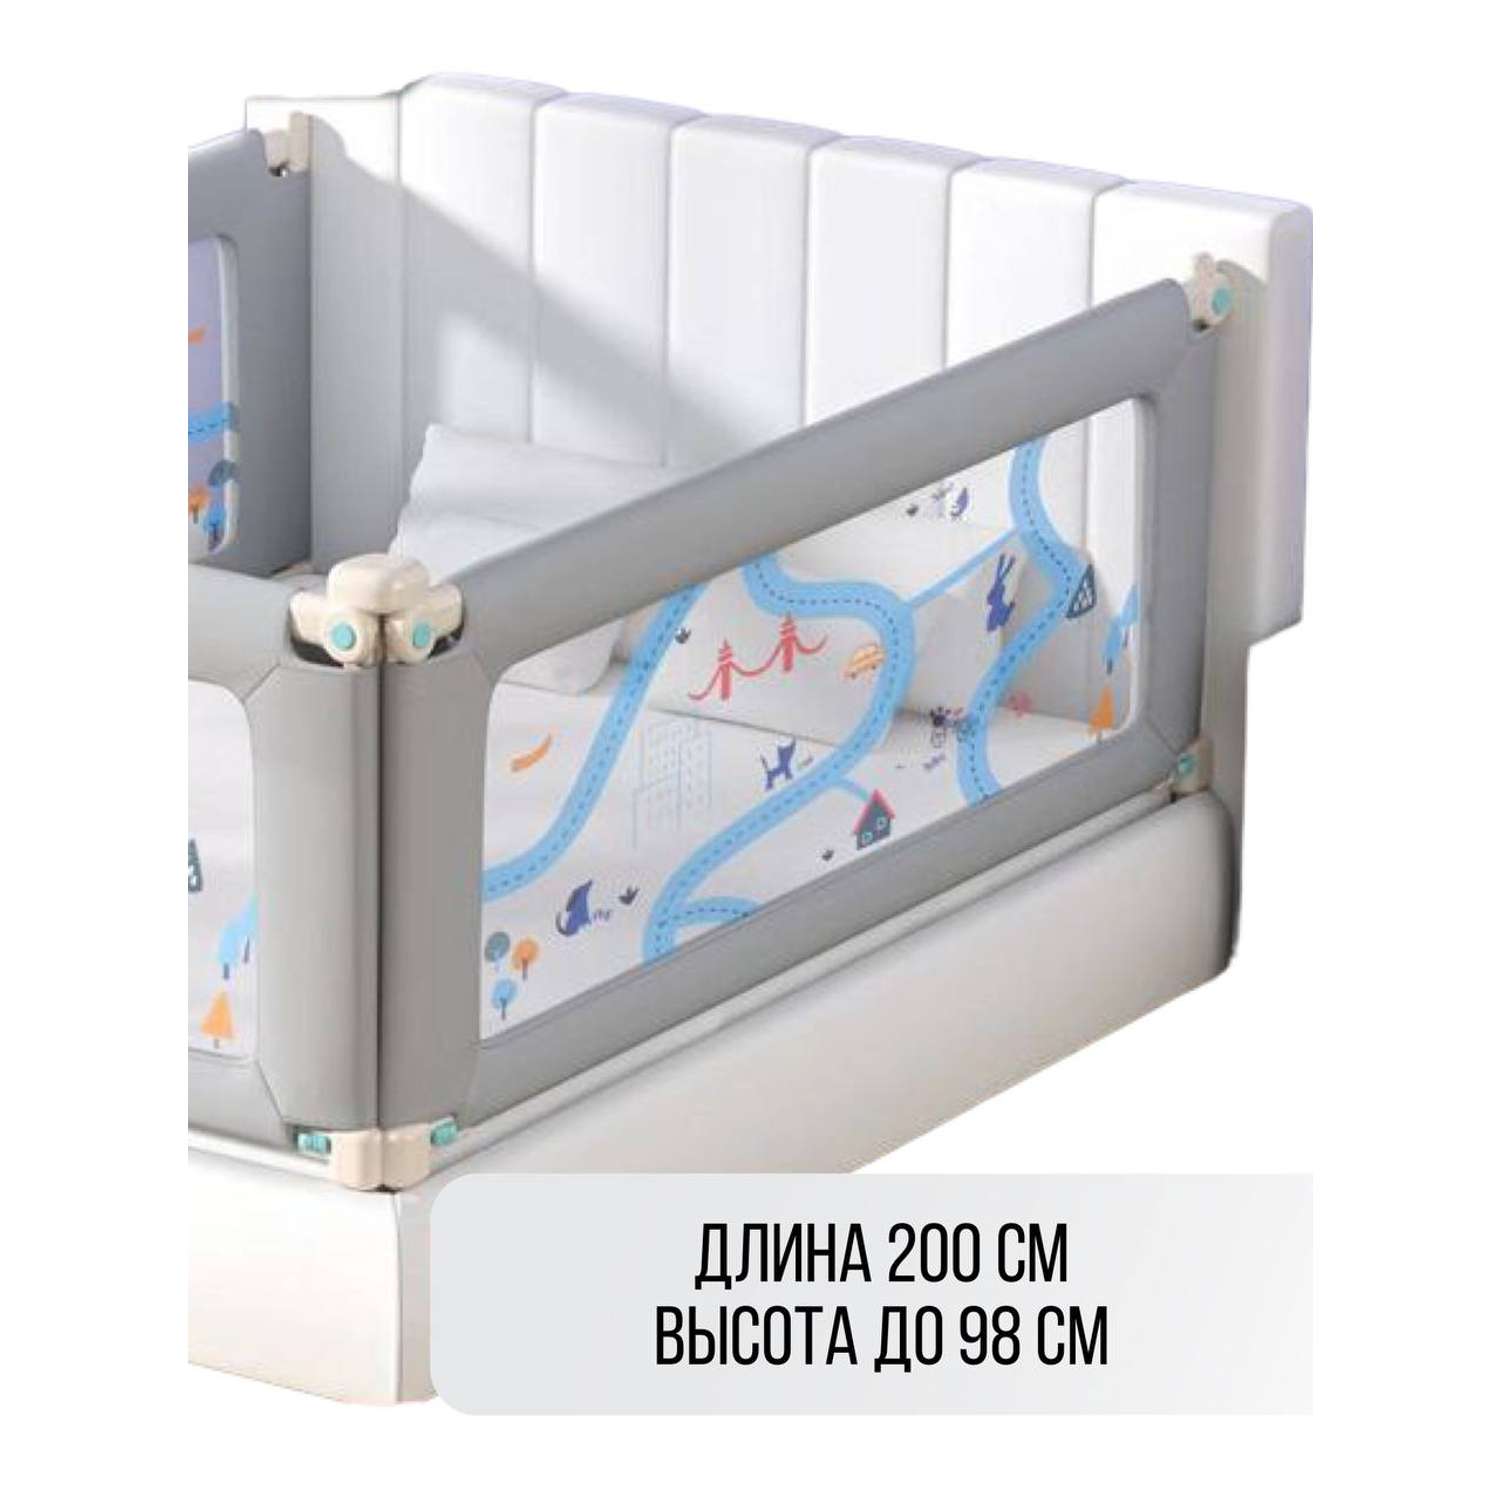 Барьер для кровати Safely and Soft Premium длиной 200см серый на одну сторону кровати - фото 1